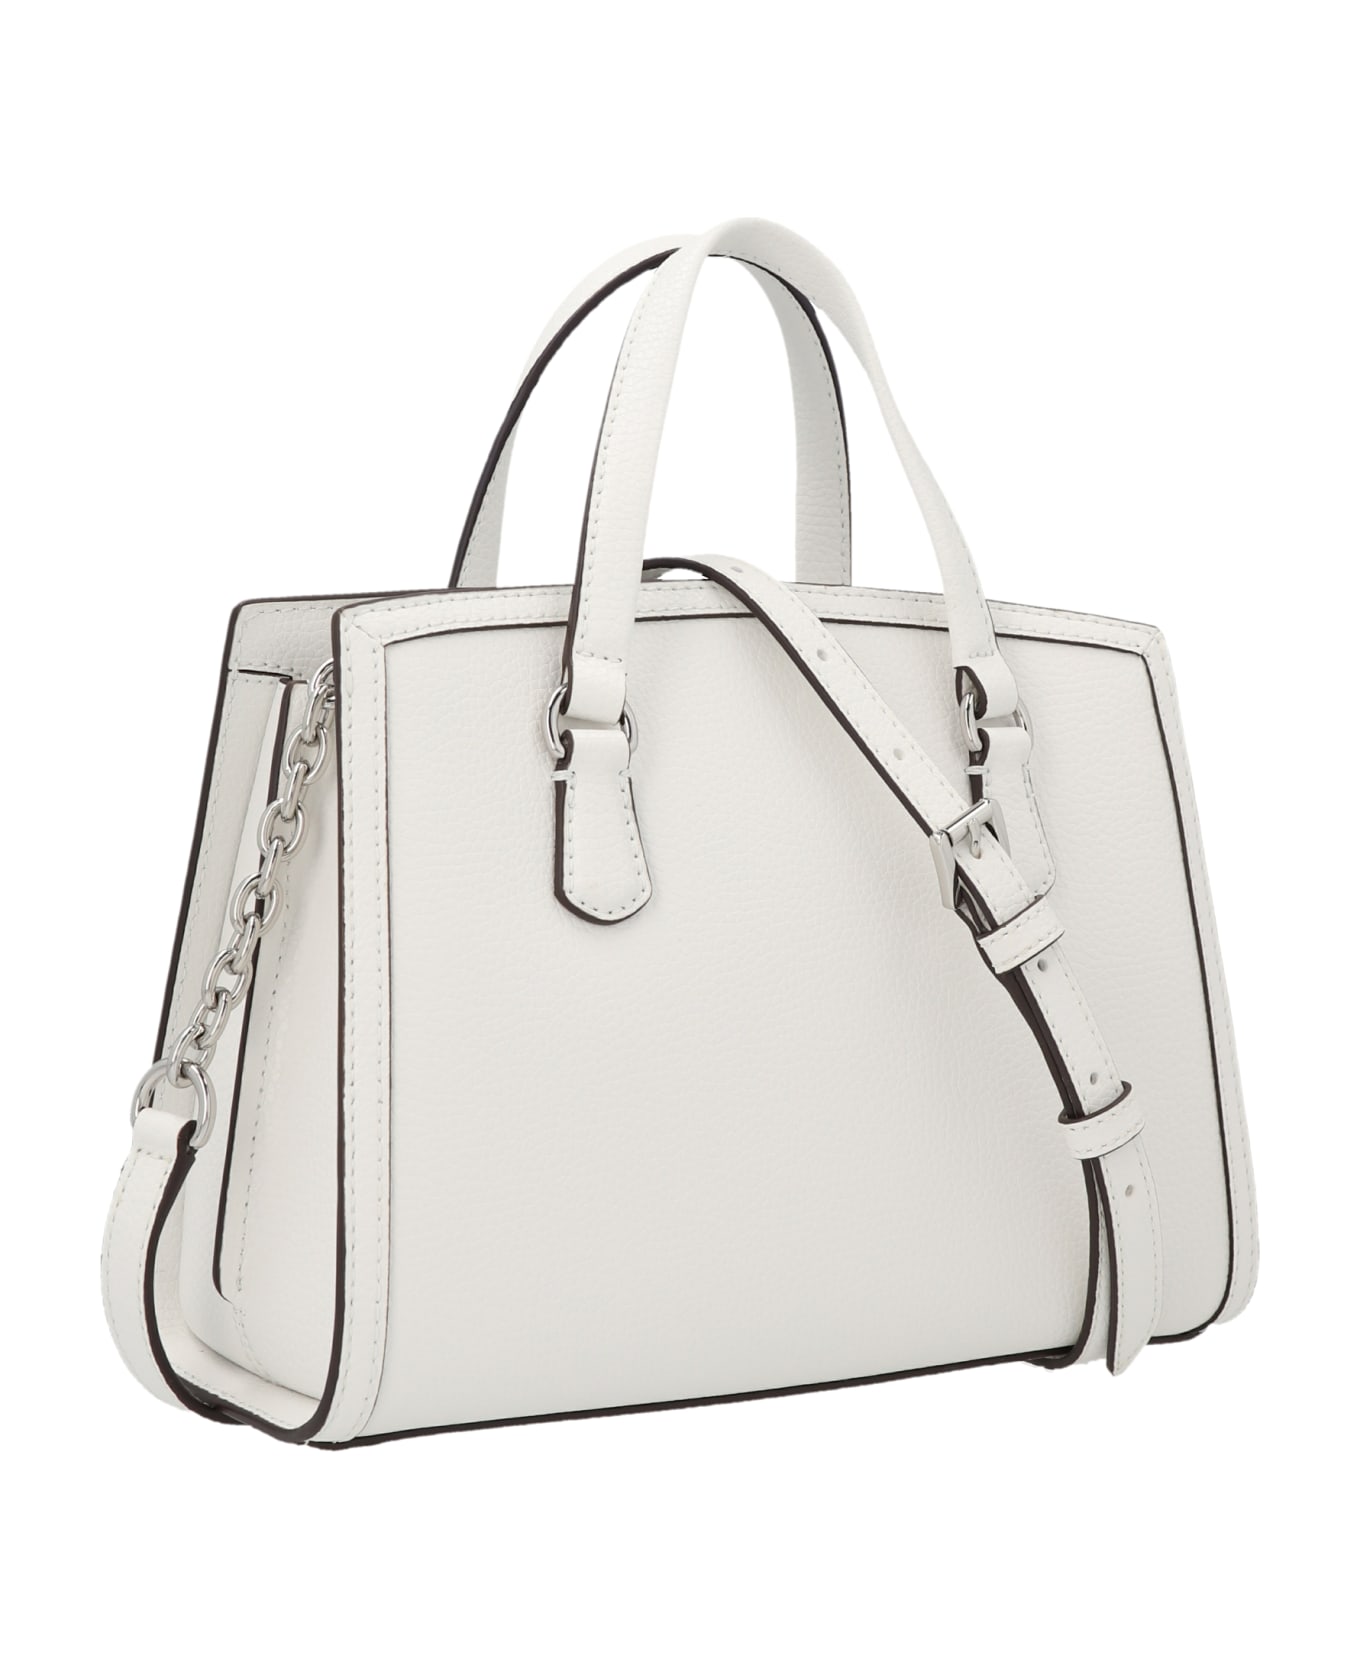 Michael Kors 'crocal' Small Handbag - White